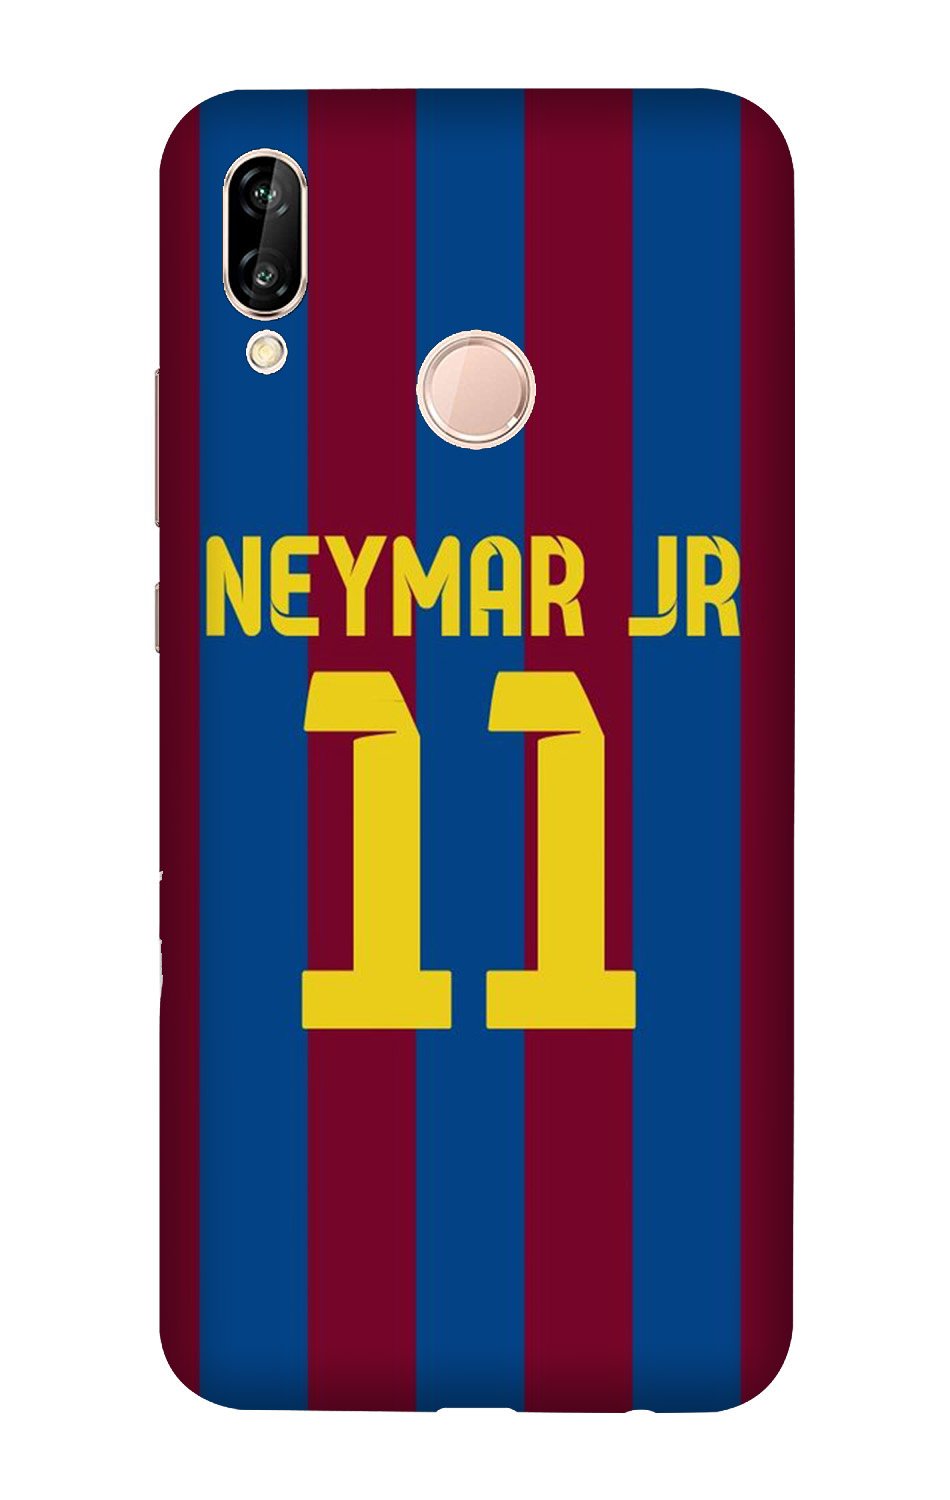 Neymar Jr Case for Vivo X21  (Design - 162)